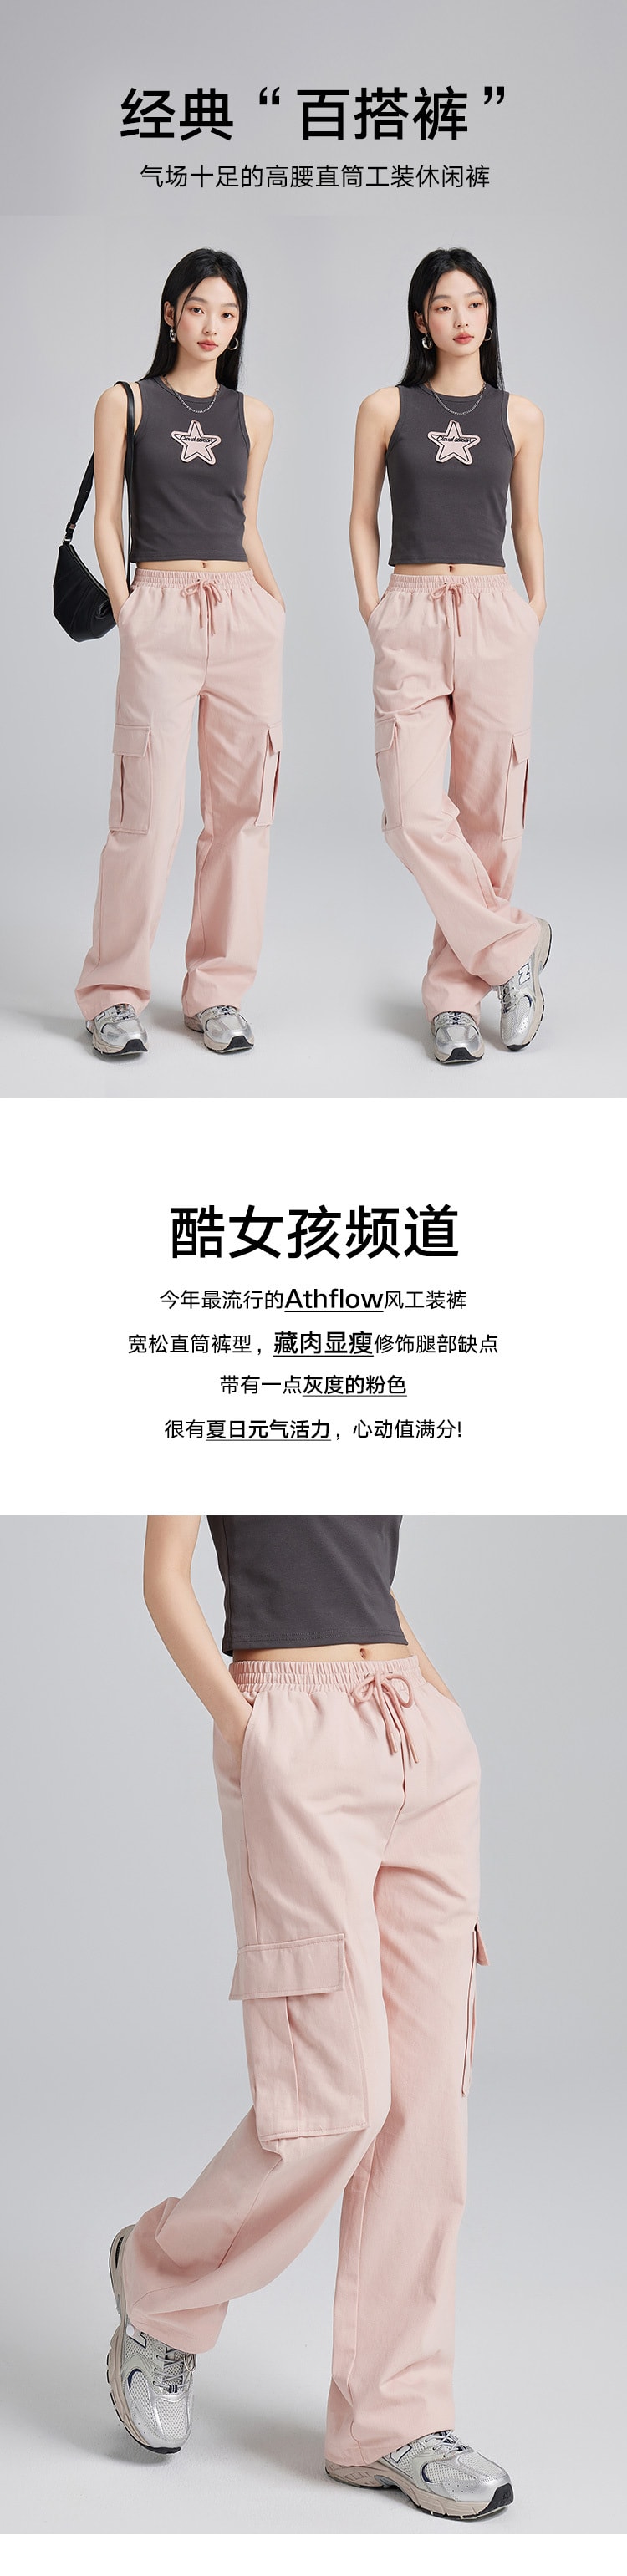 【中国直邮】HSPM 新款高腰宽松直筒工装休闲裤  粉色 S